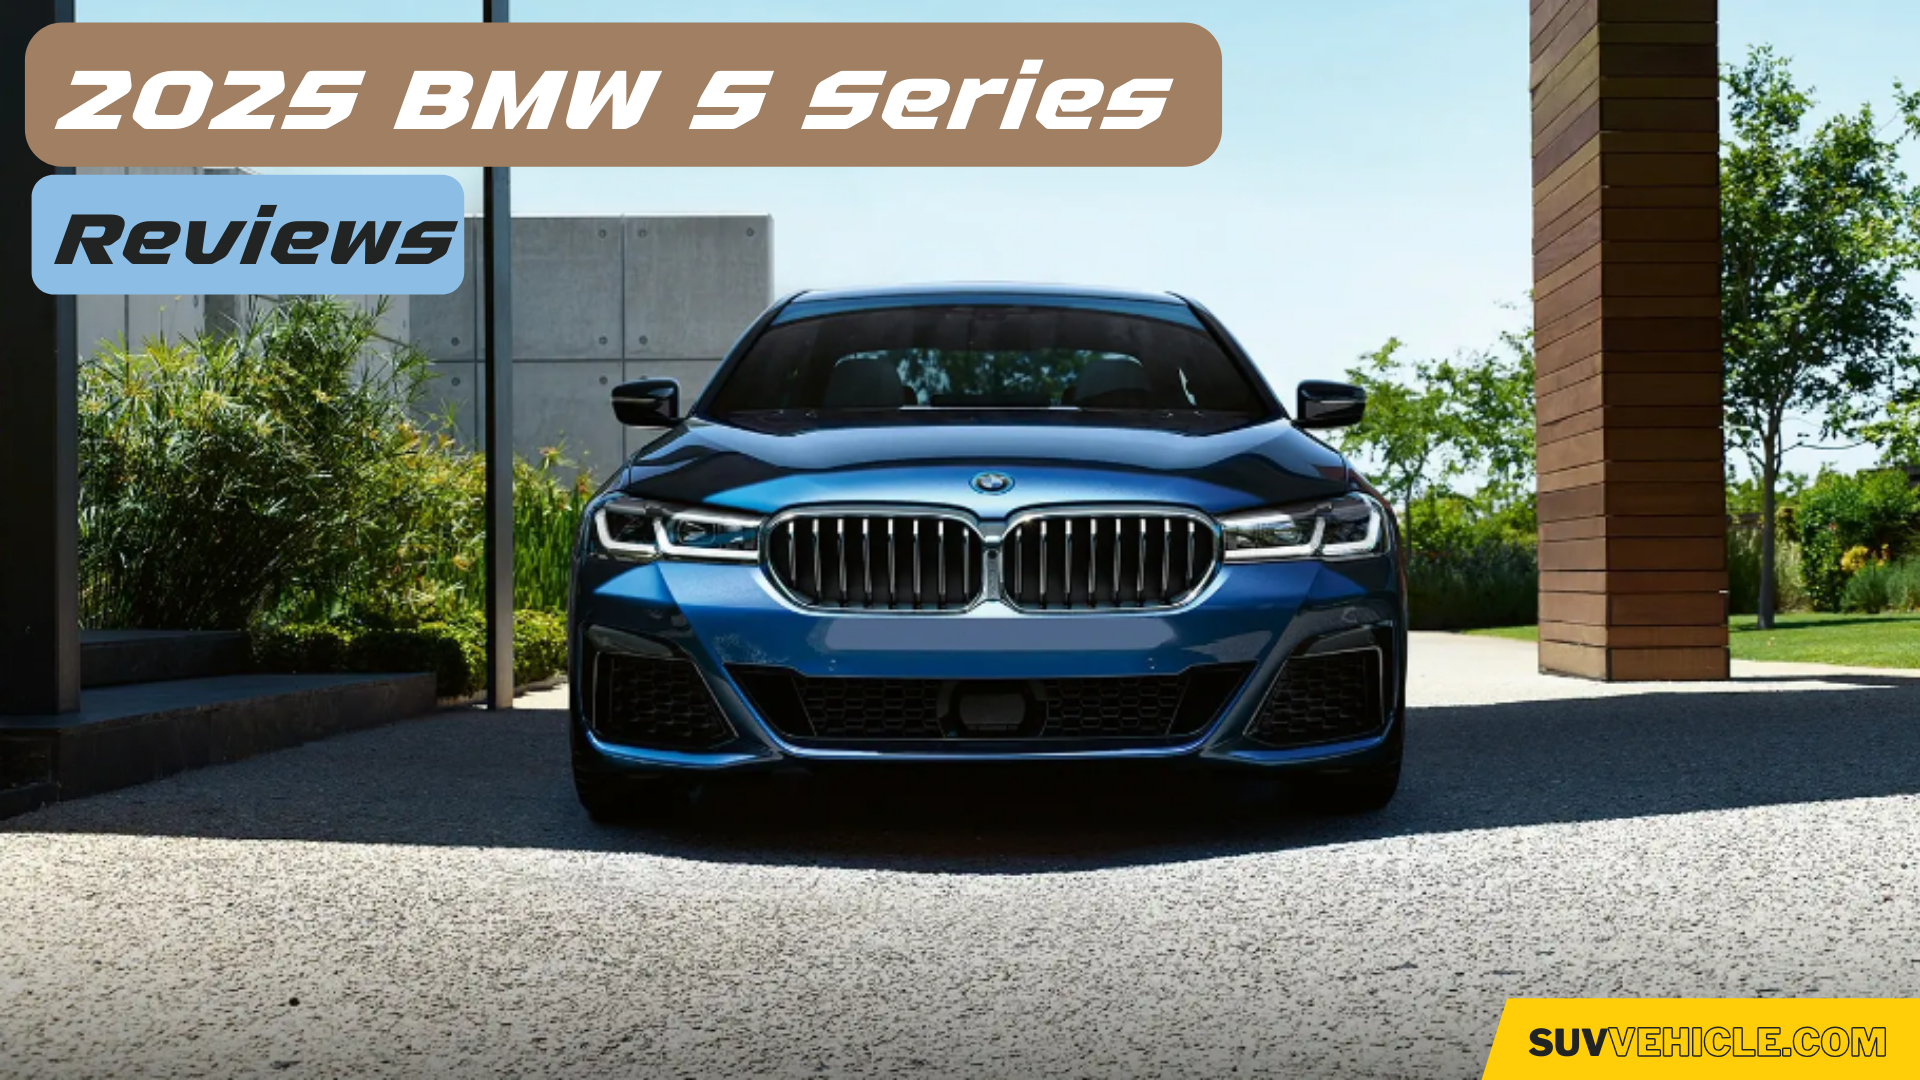 2025 BMW 5 Series Concept, Rumors, Specs, Price